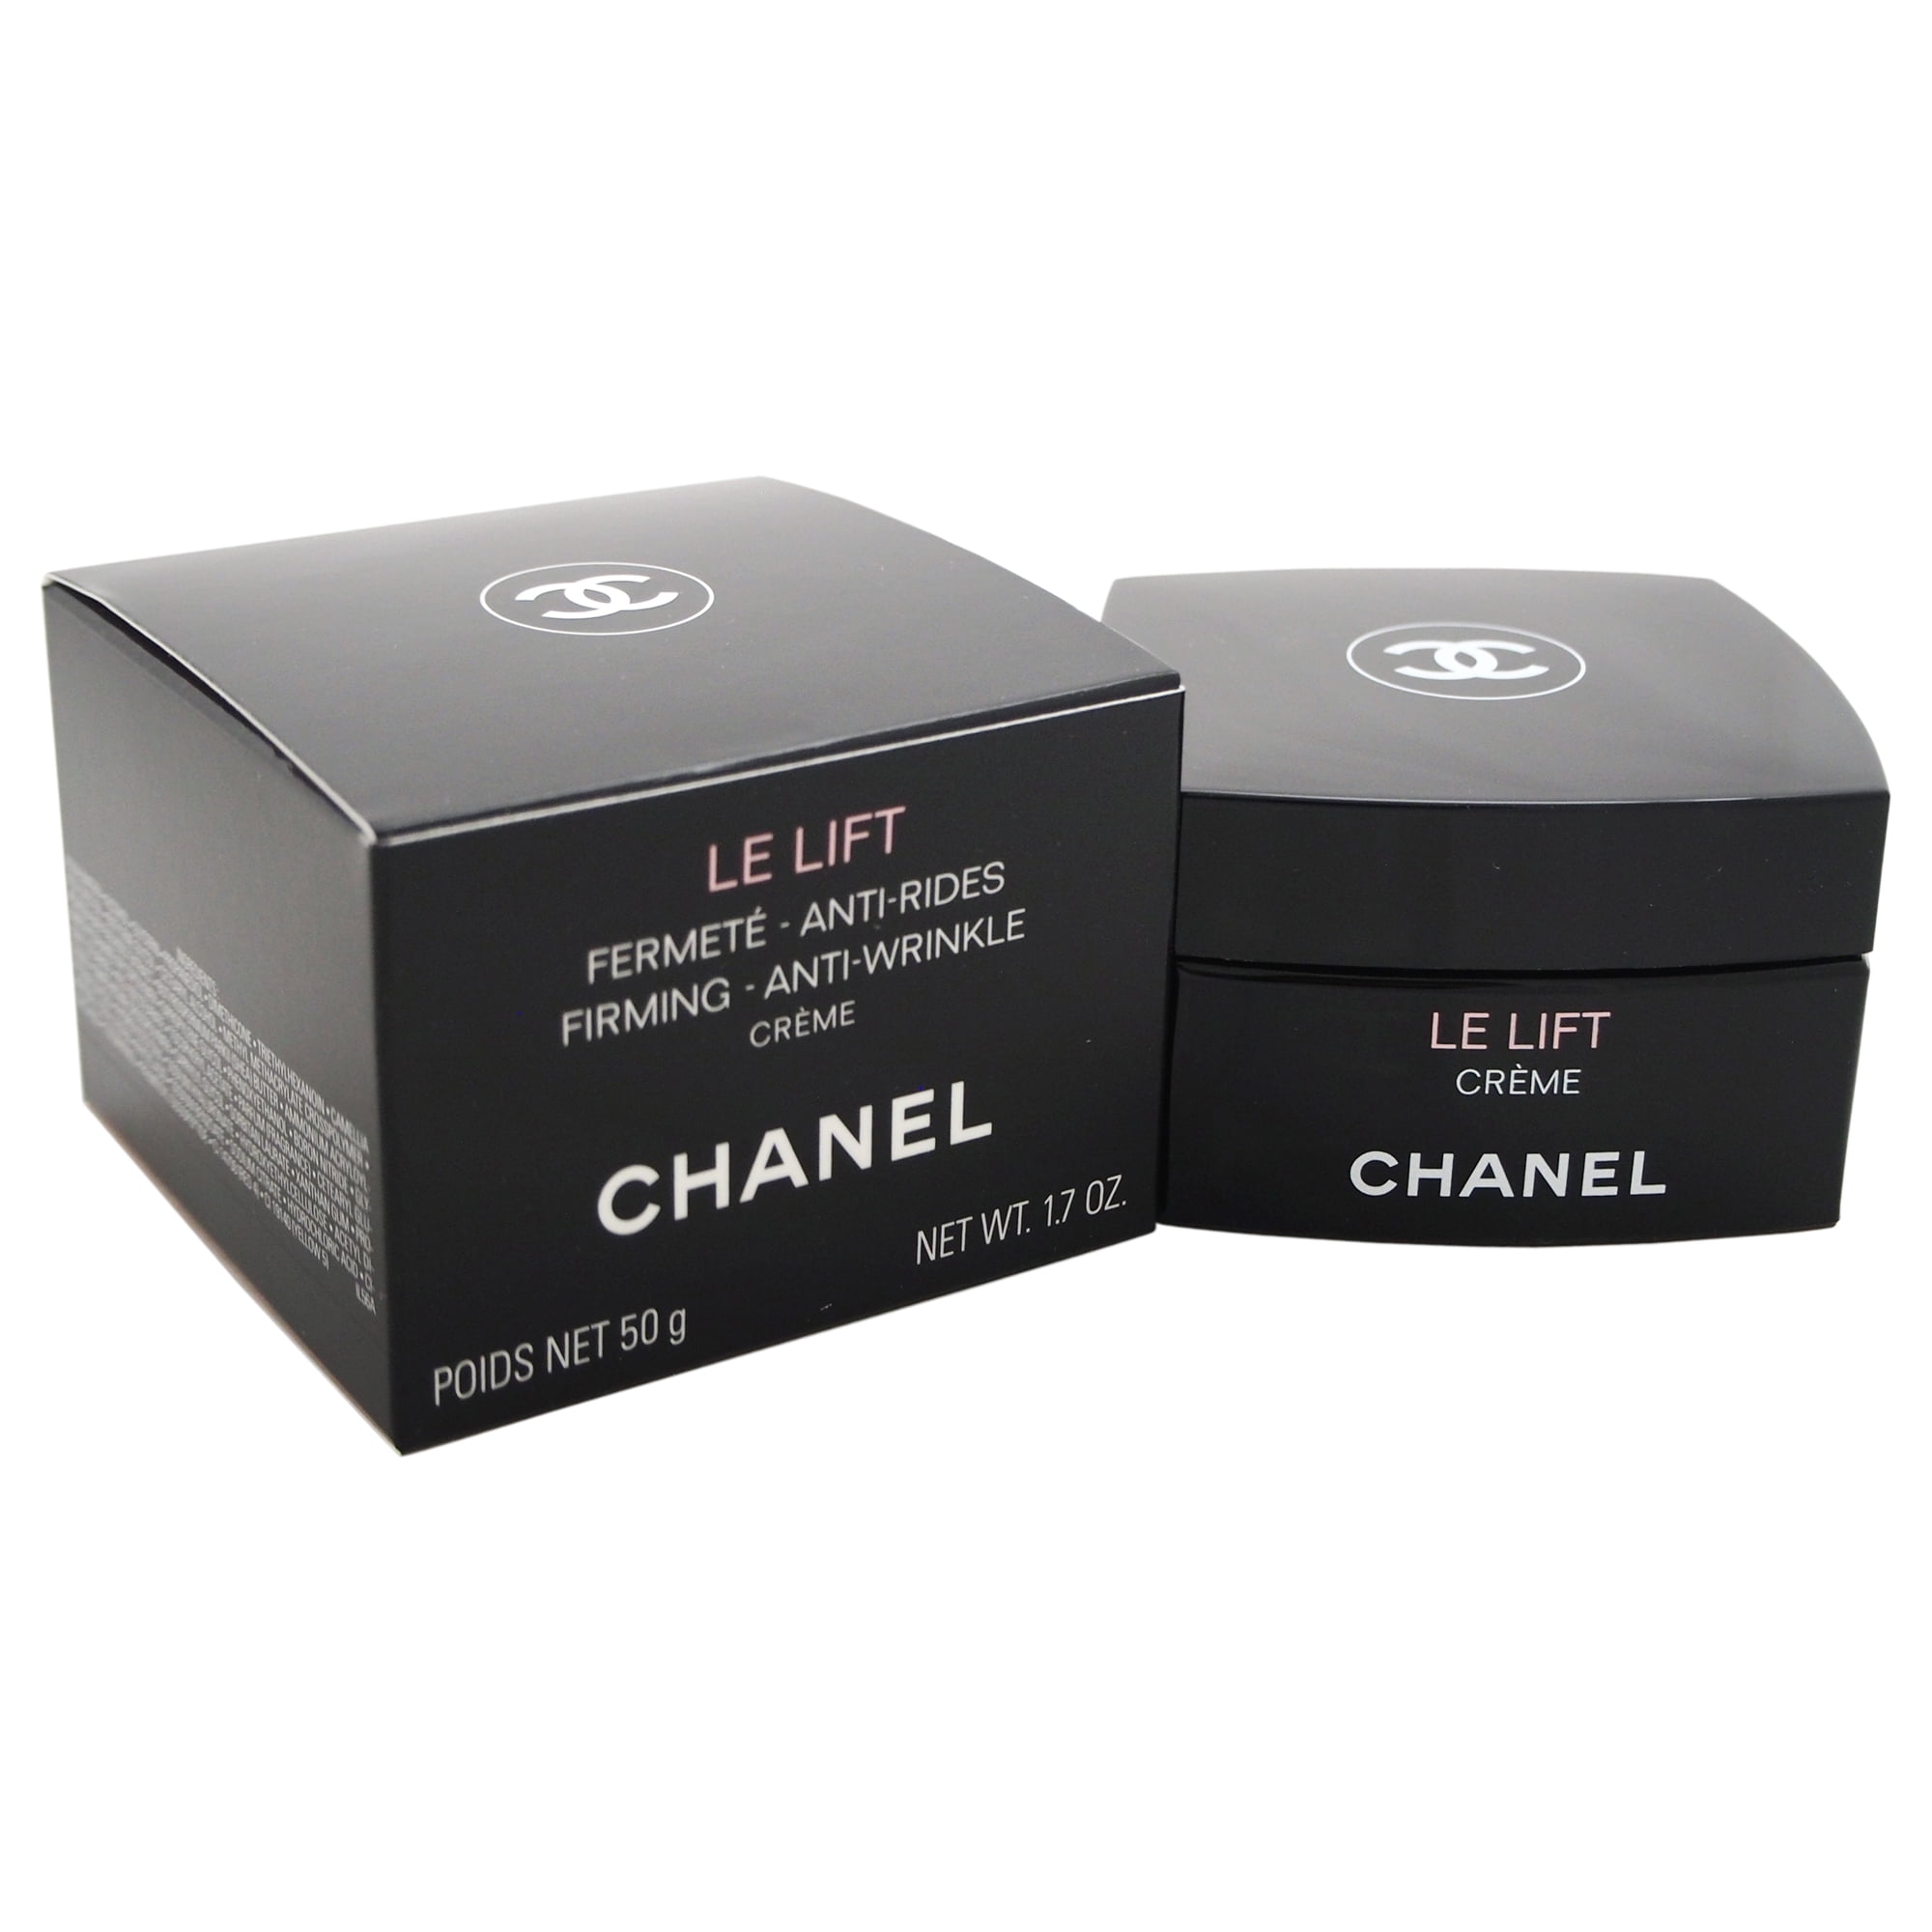 Купить крем шанель. Chanel le Lift Creme 50 ml. Le Lift Chanel Creme riche для лица. Chanel le Lift fermete Anti Rides Firming Anti Wrinkle Creme. Лифт-крем forlled hyalogy Lift Cream 100g.